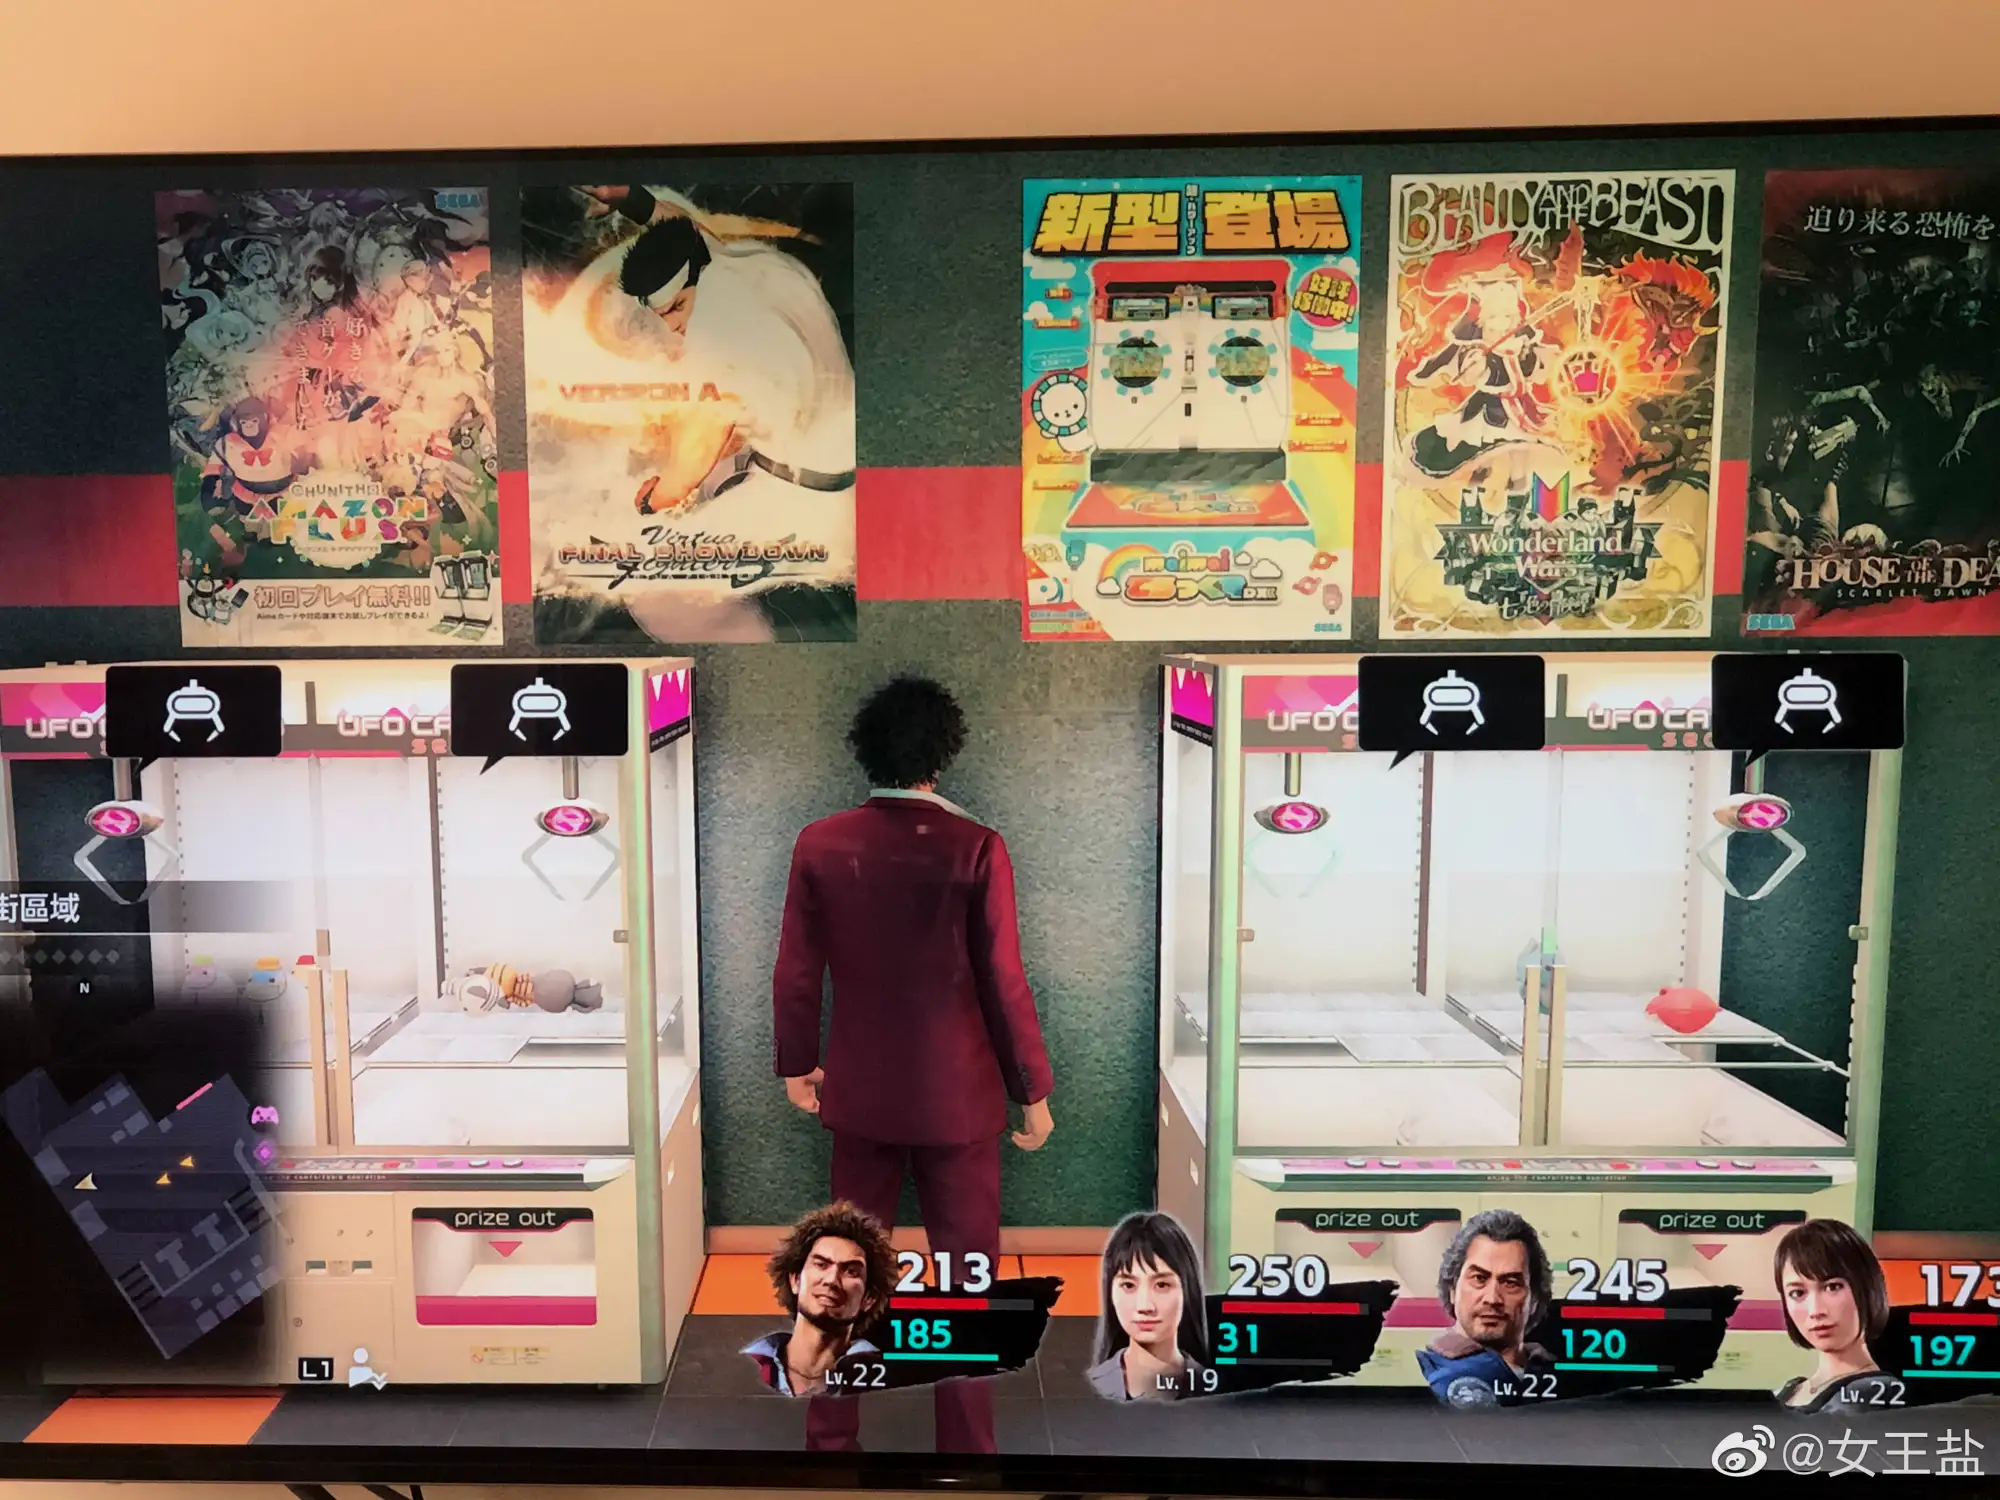 《人中之龙7》中世嘉街机厅中的《maimai》新筐体海报